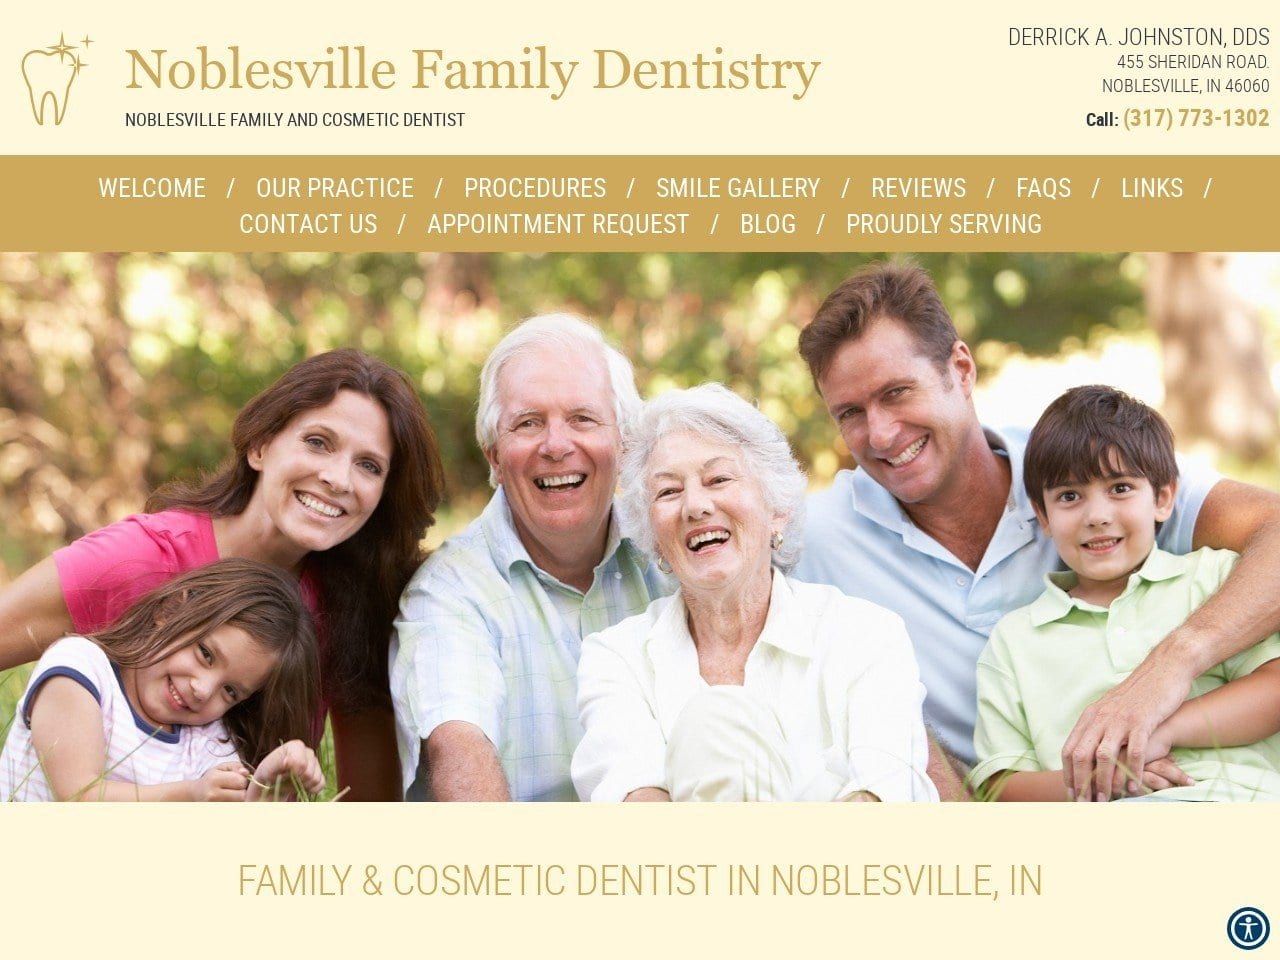 Noblesville Family Dentist Website Screenshot from noblesvillefamilydentistry.com